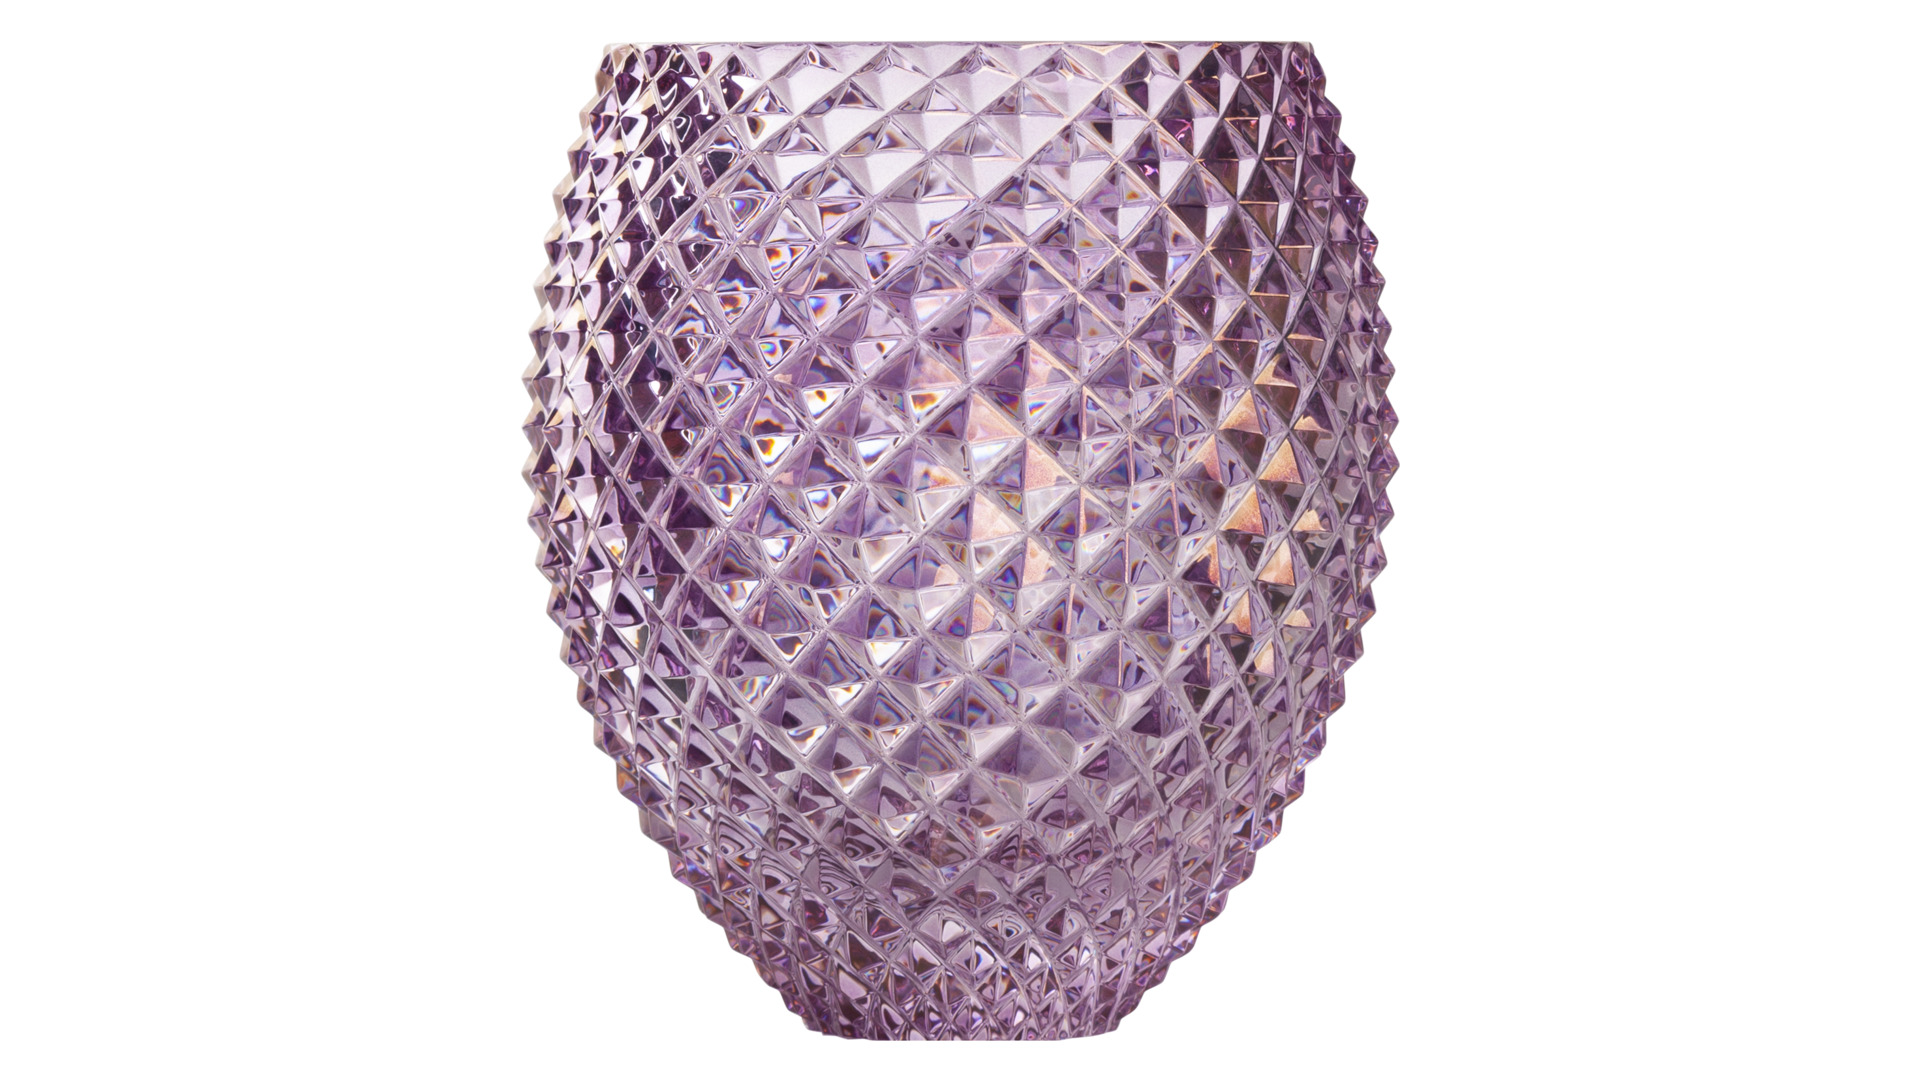 Ваза Cristal de Paris Диамант 17,5х13 см, фиолетовая